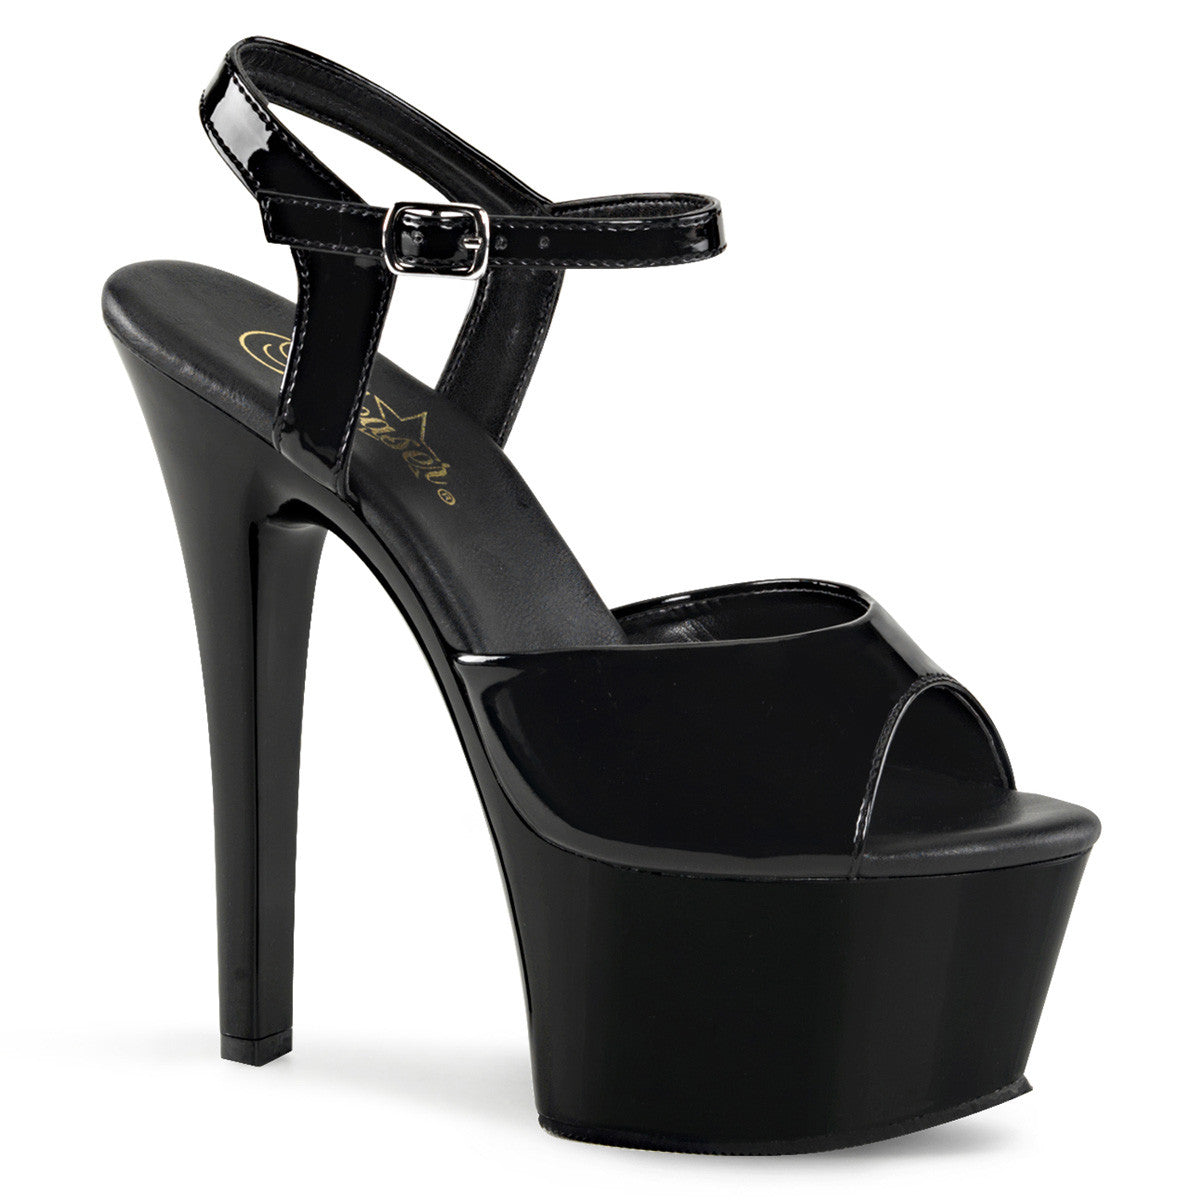 Pleaser ASPIRE-609 Black Ankle Strap Sandals With Black Platform - Shoecup.com - 1